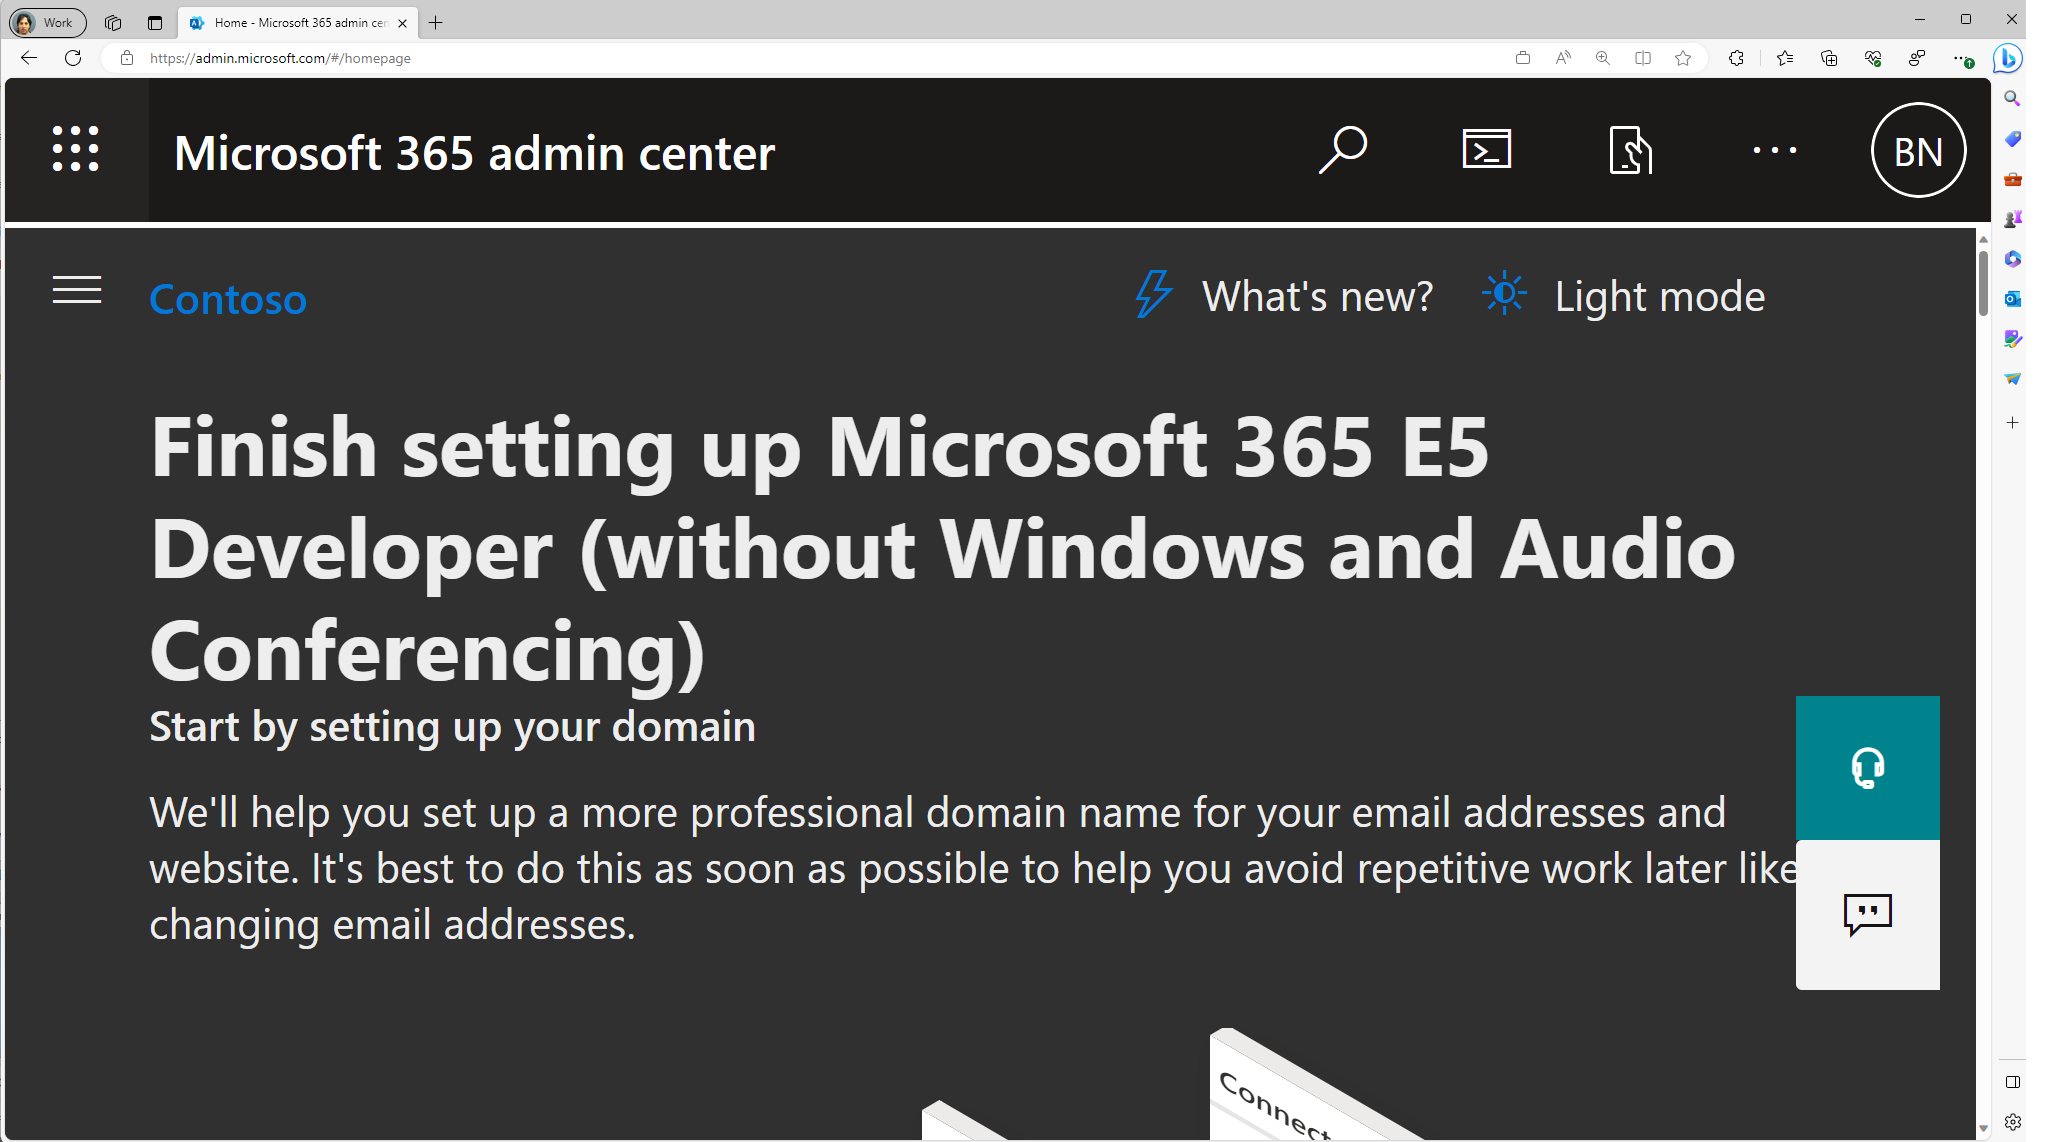 Captura de ecrã da página inicial do Centro de administração da Microsoft.